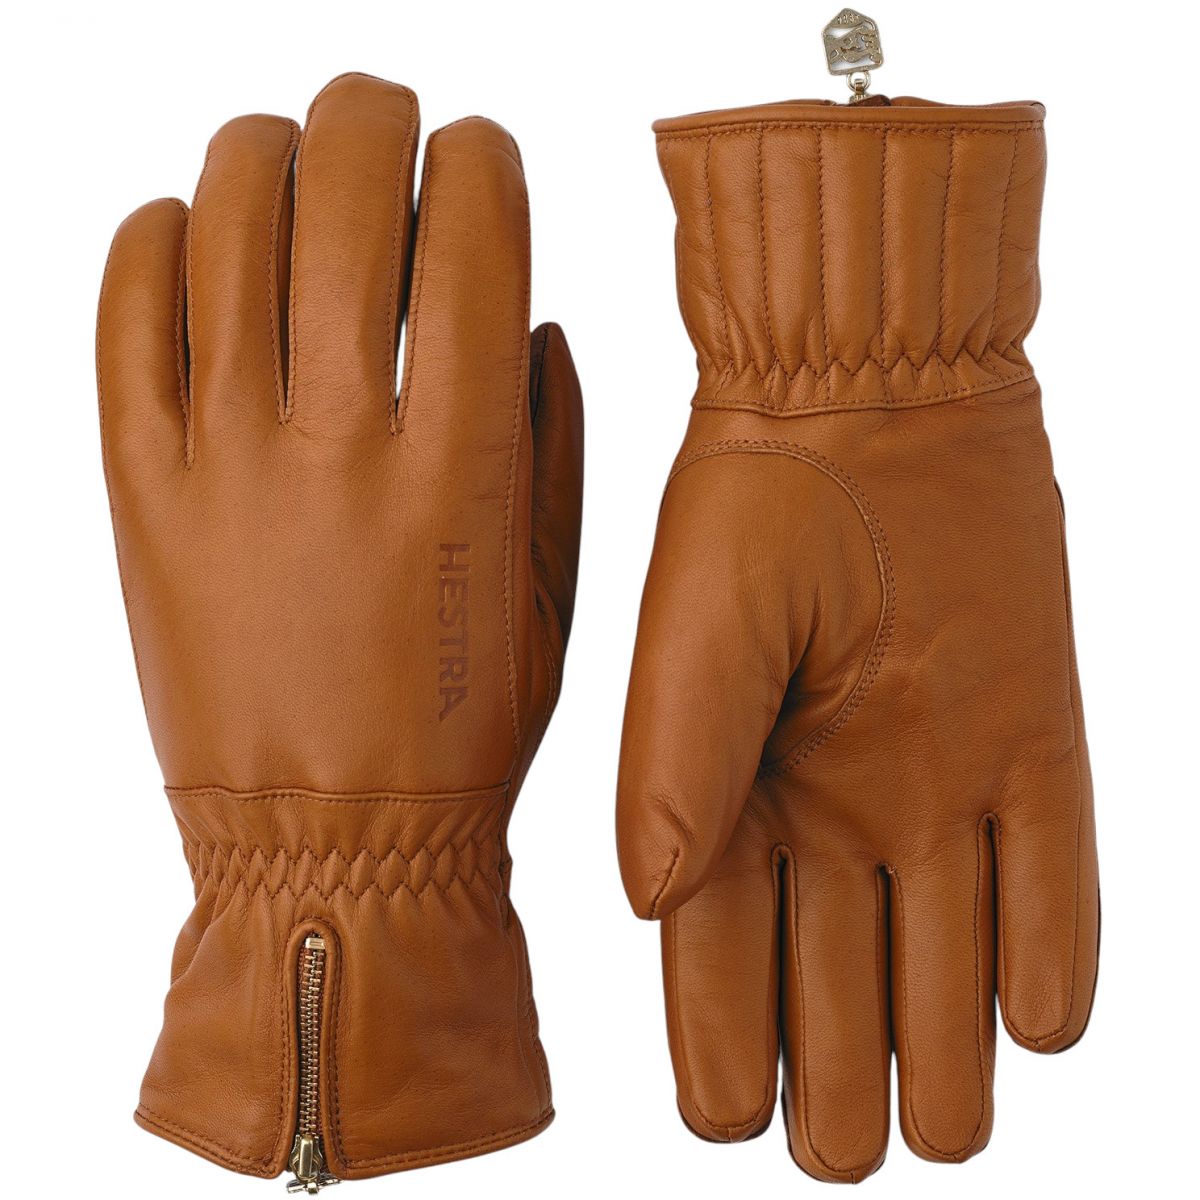 Brug Hestra Leather Swisswool Classic, handsker, kork til en forbedret oplevelse